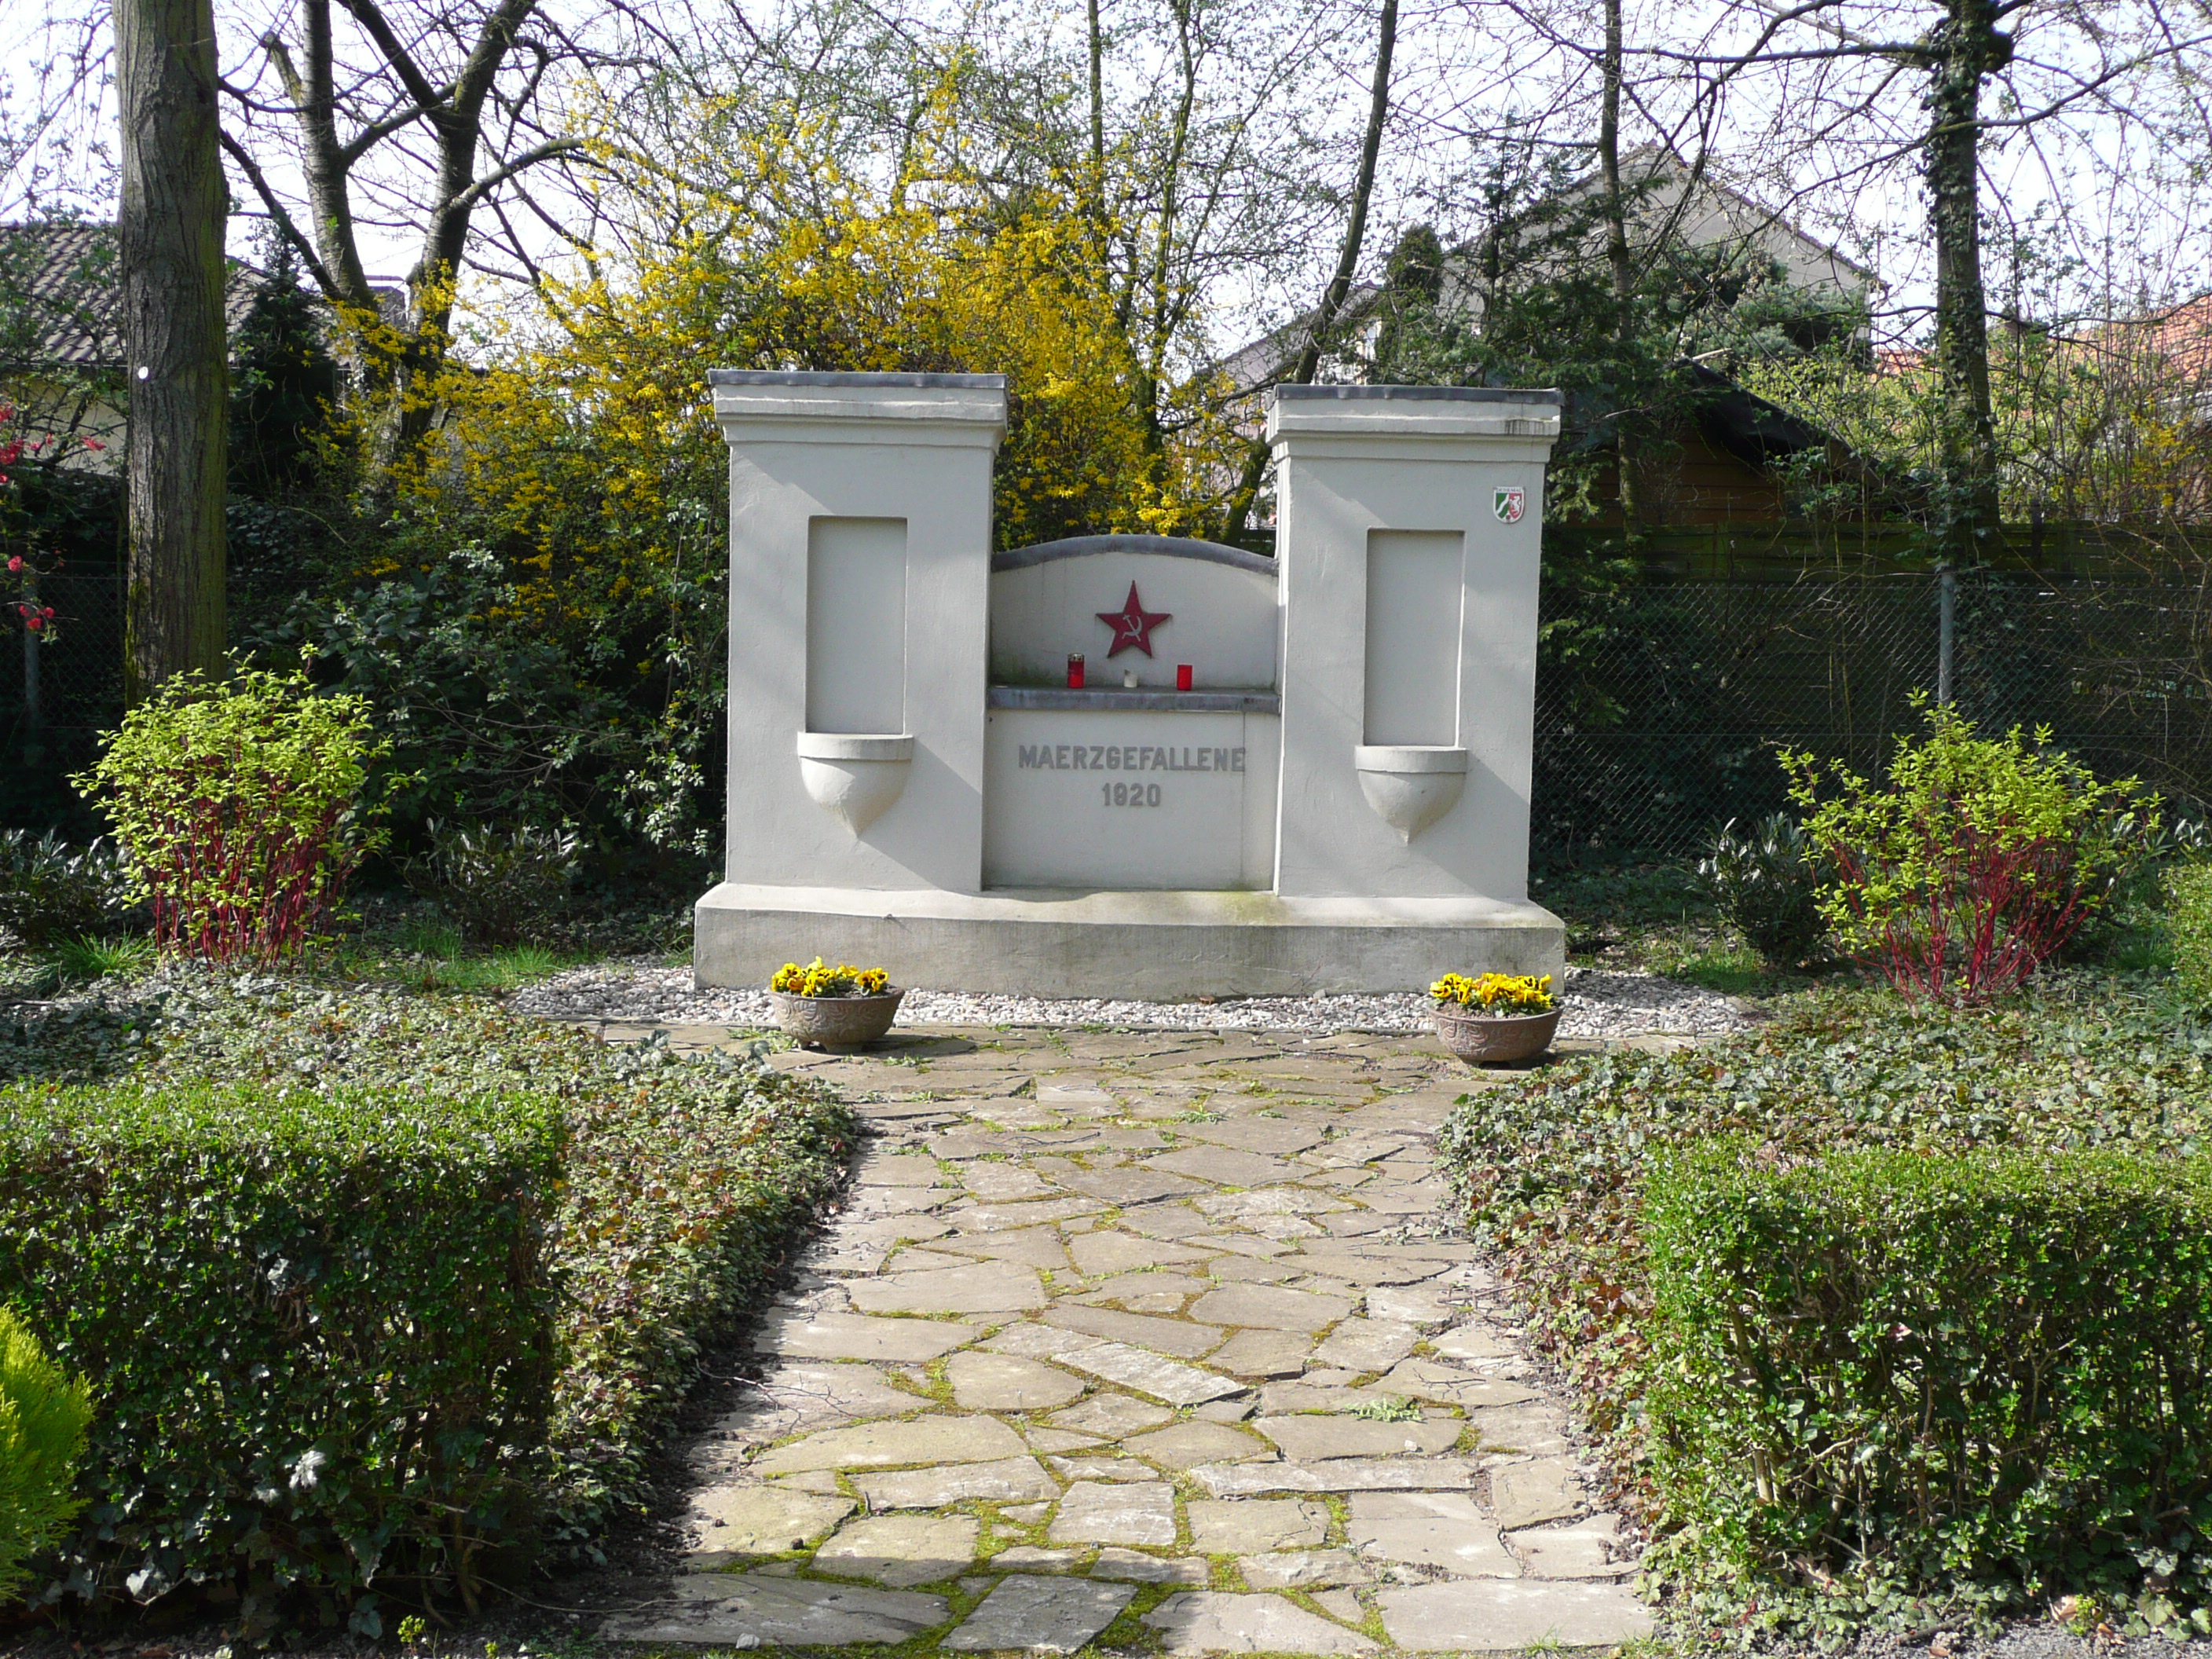 Denkmal für die Märzgefallenen 1920